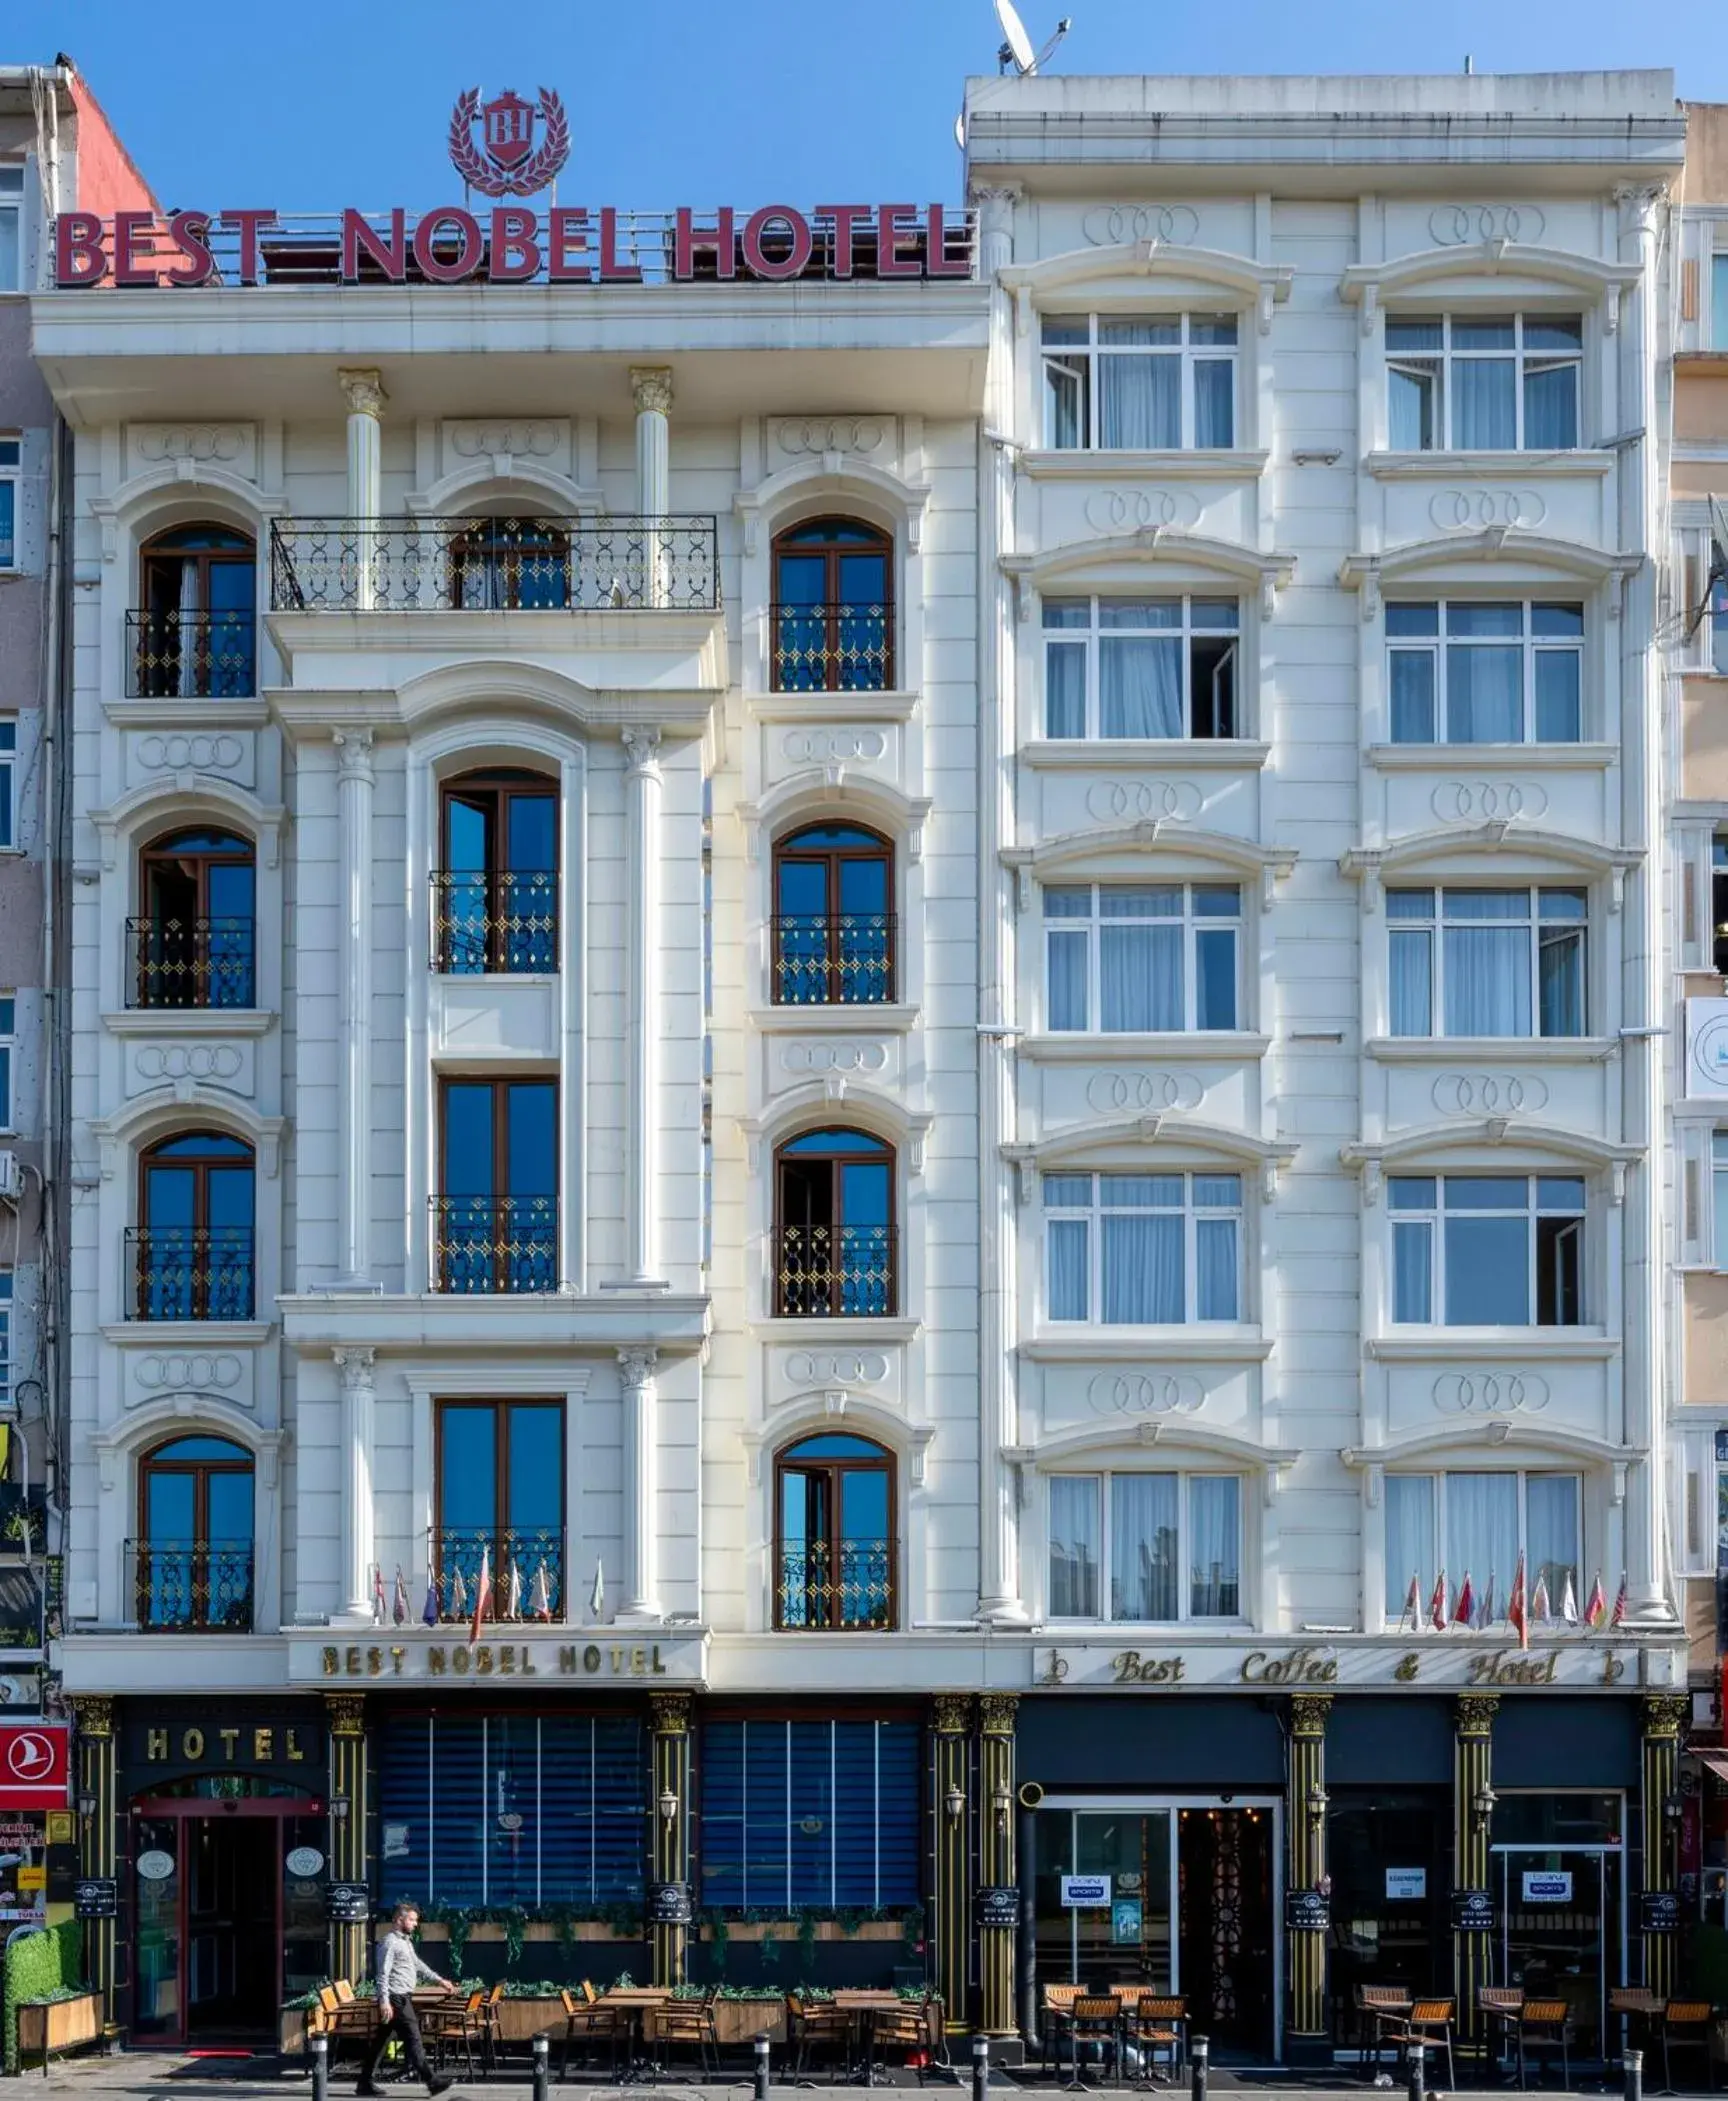 Property Building in Best Nobel Hotel 2